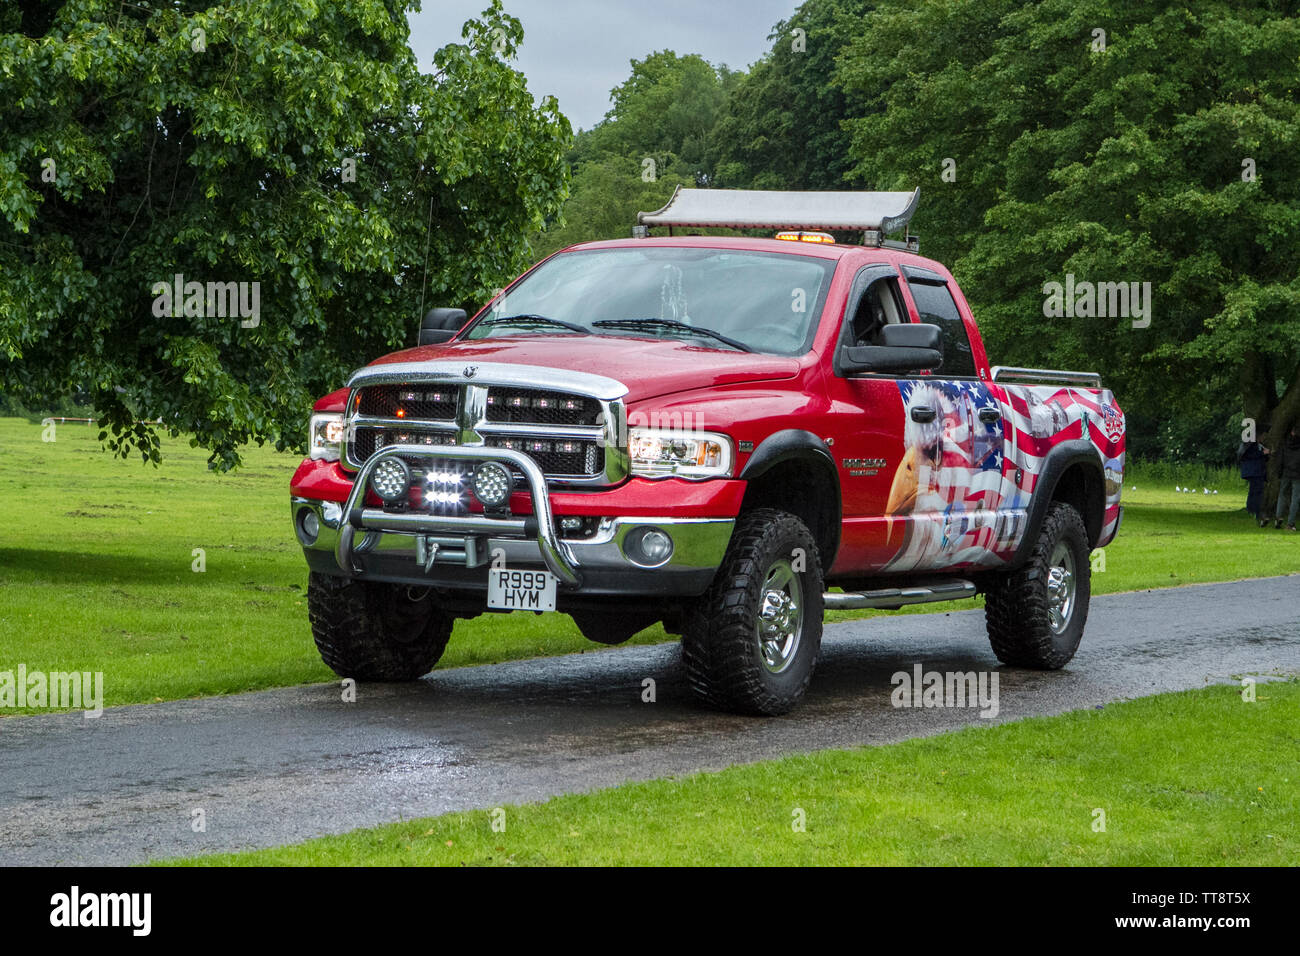 Dodge 2500 ram truck immagini e fotografie stock ad alta risoluzione - Alamy